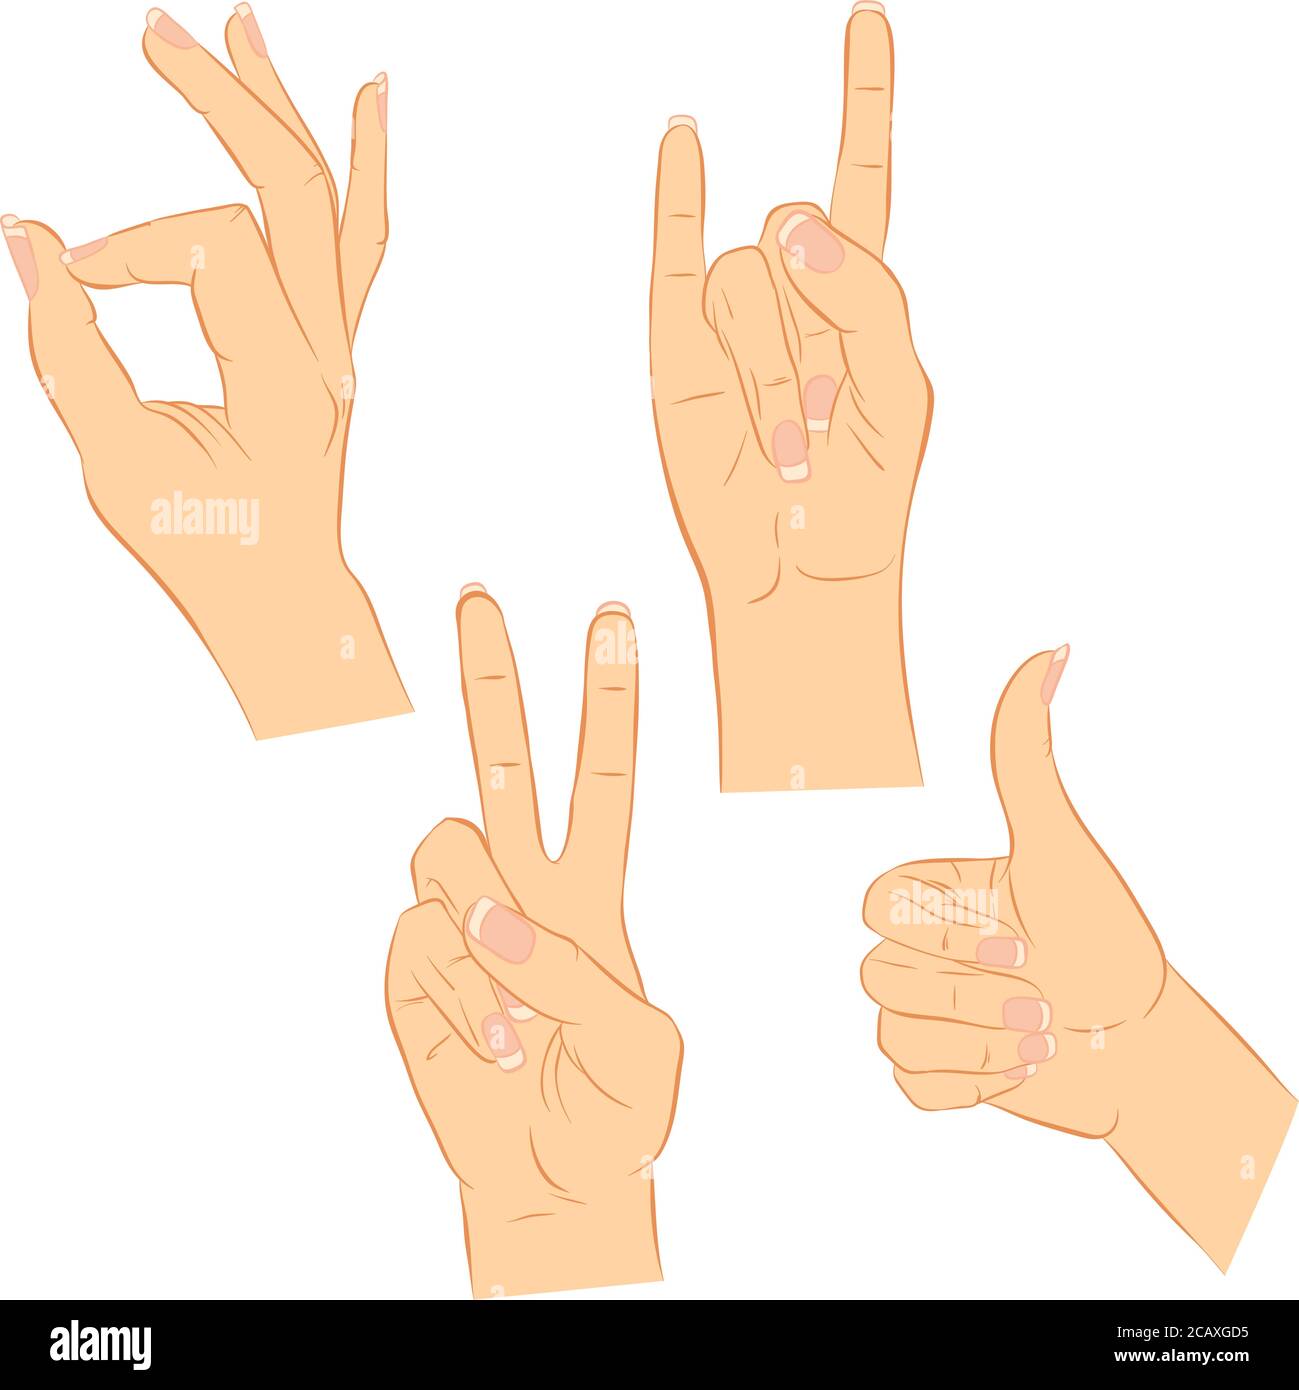 Illustrazione vettoriale di una mano femminile con unghie lunghe. Vari gesti. Impostare isolato su uno sfondo bianco Illustrazione Vettoriale